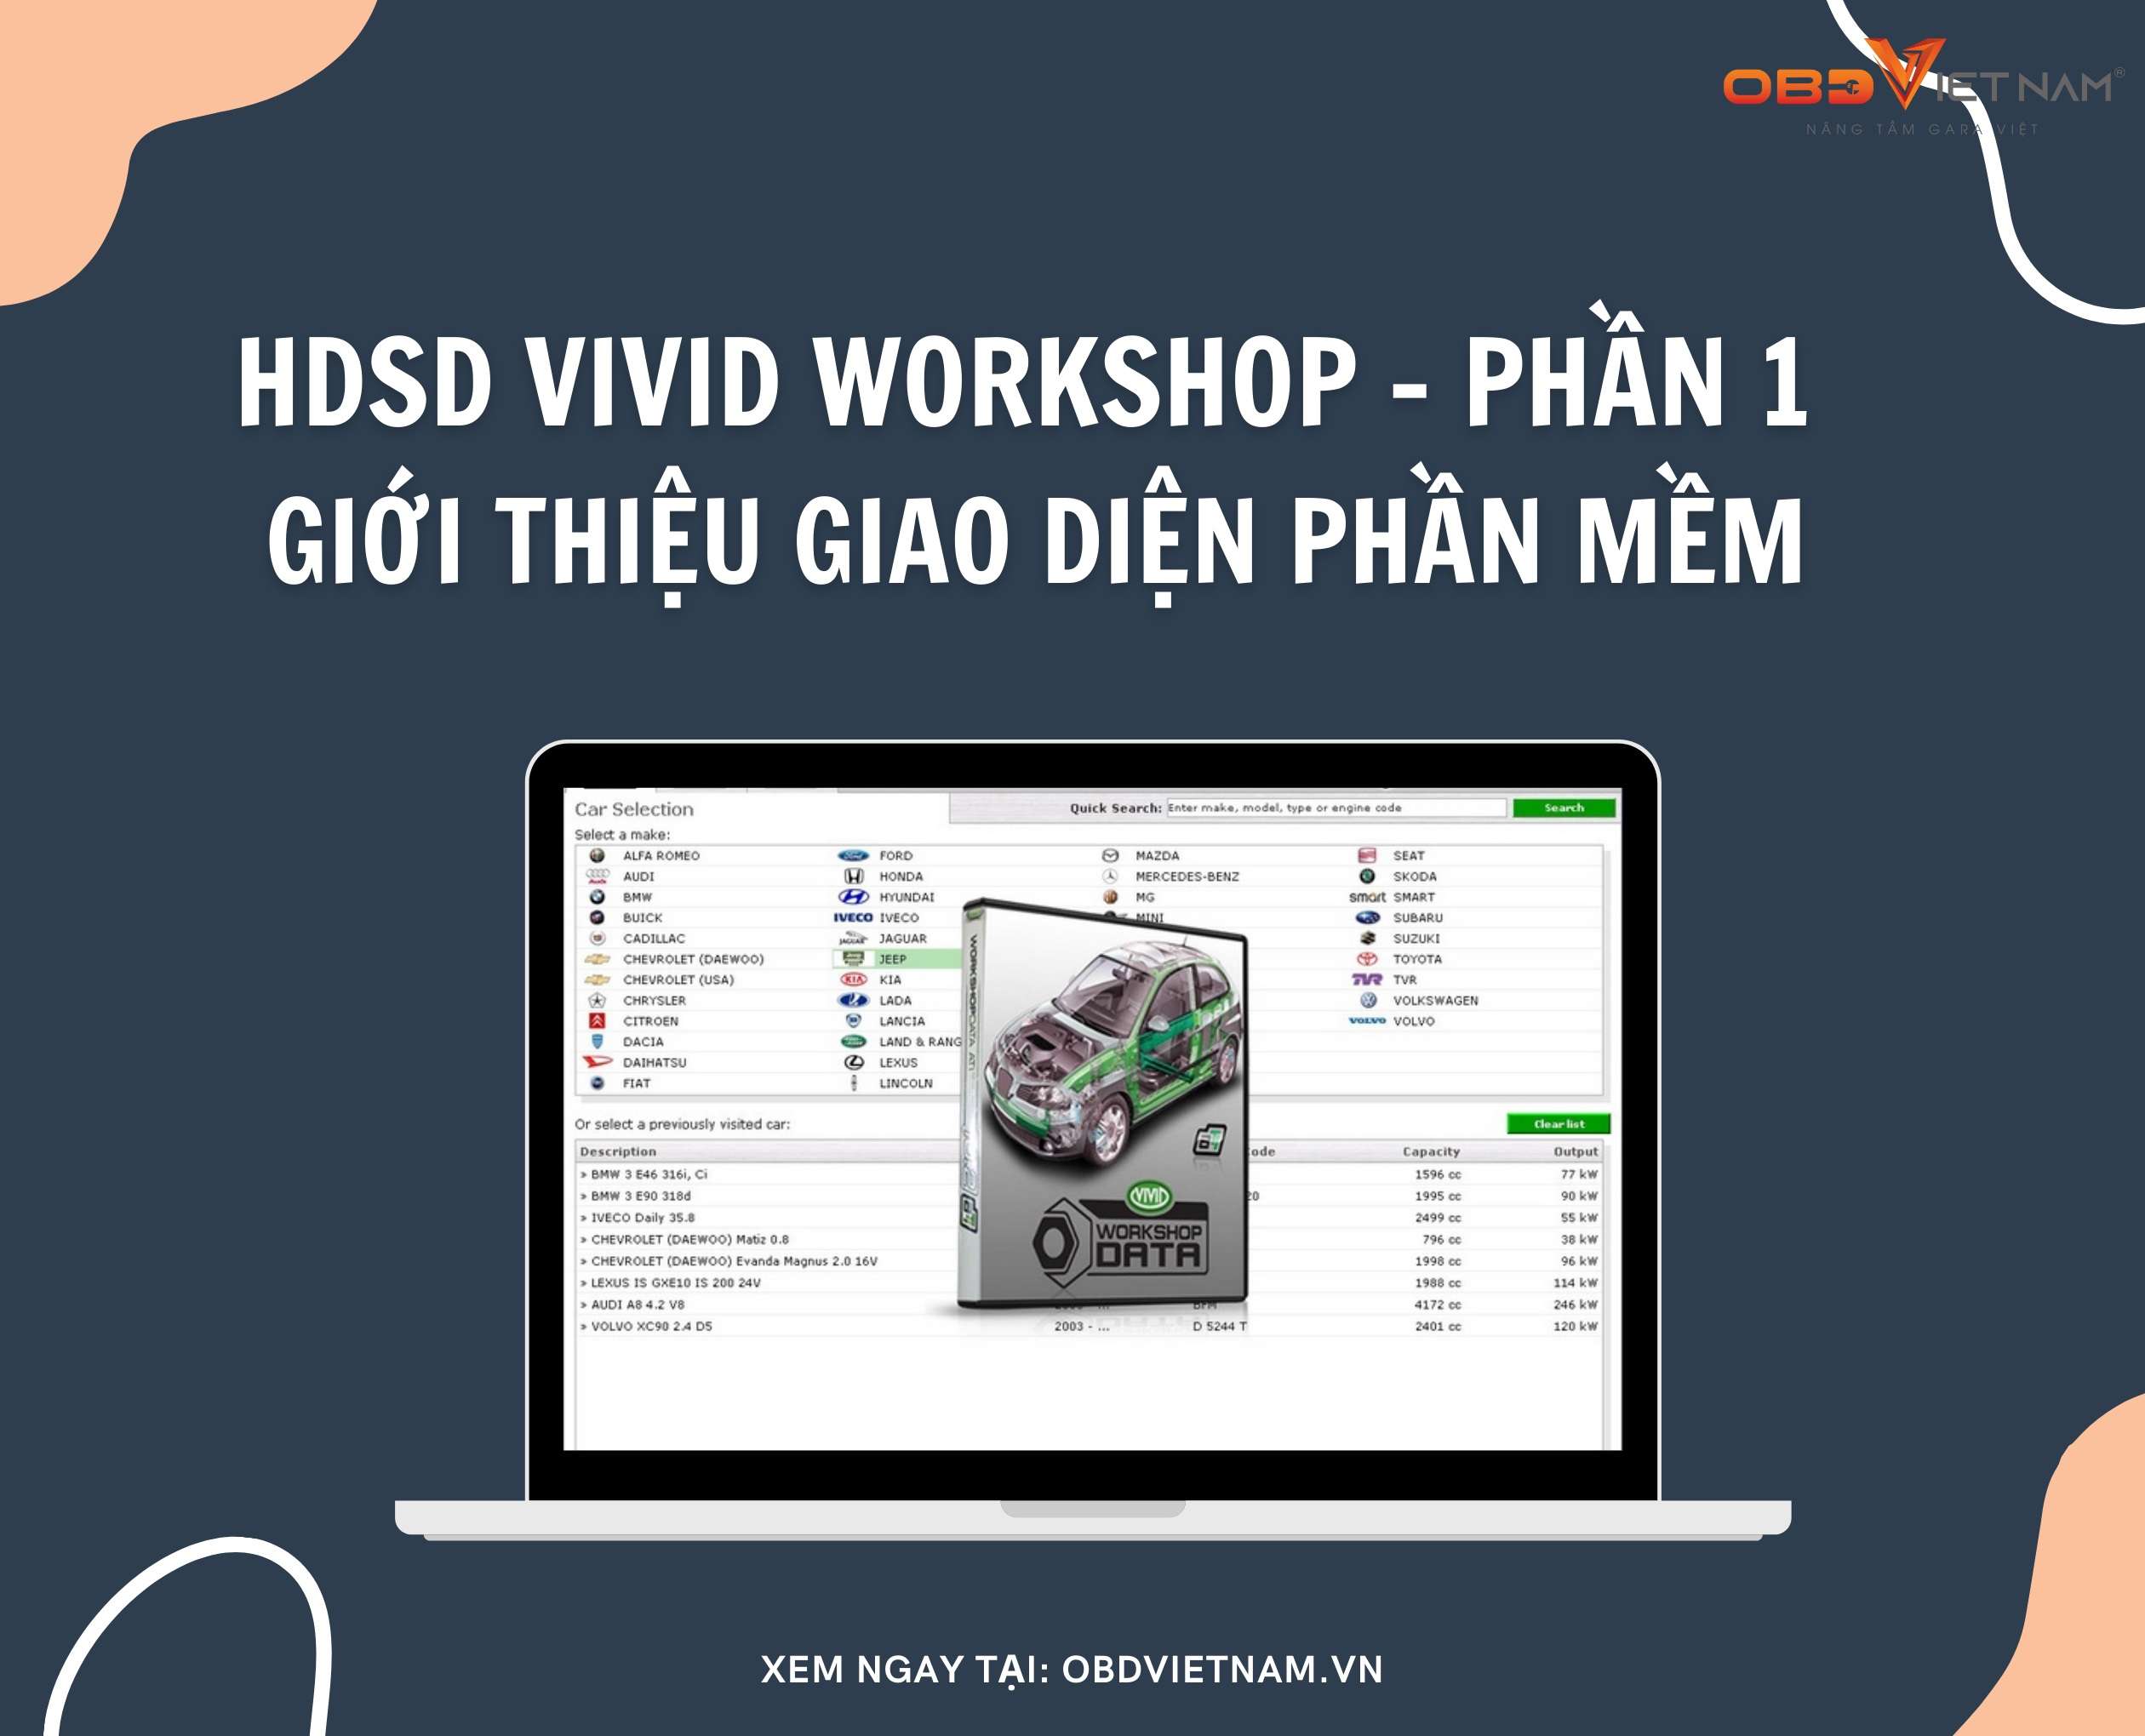 phan-mem-tra-cuu-vivid-workshop-obd-viet-nam-1